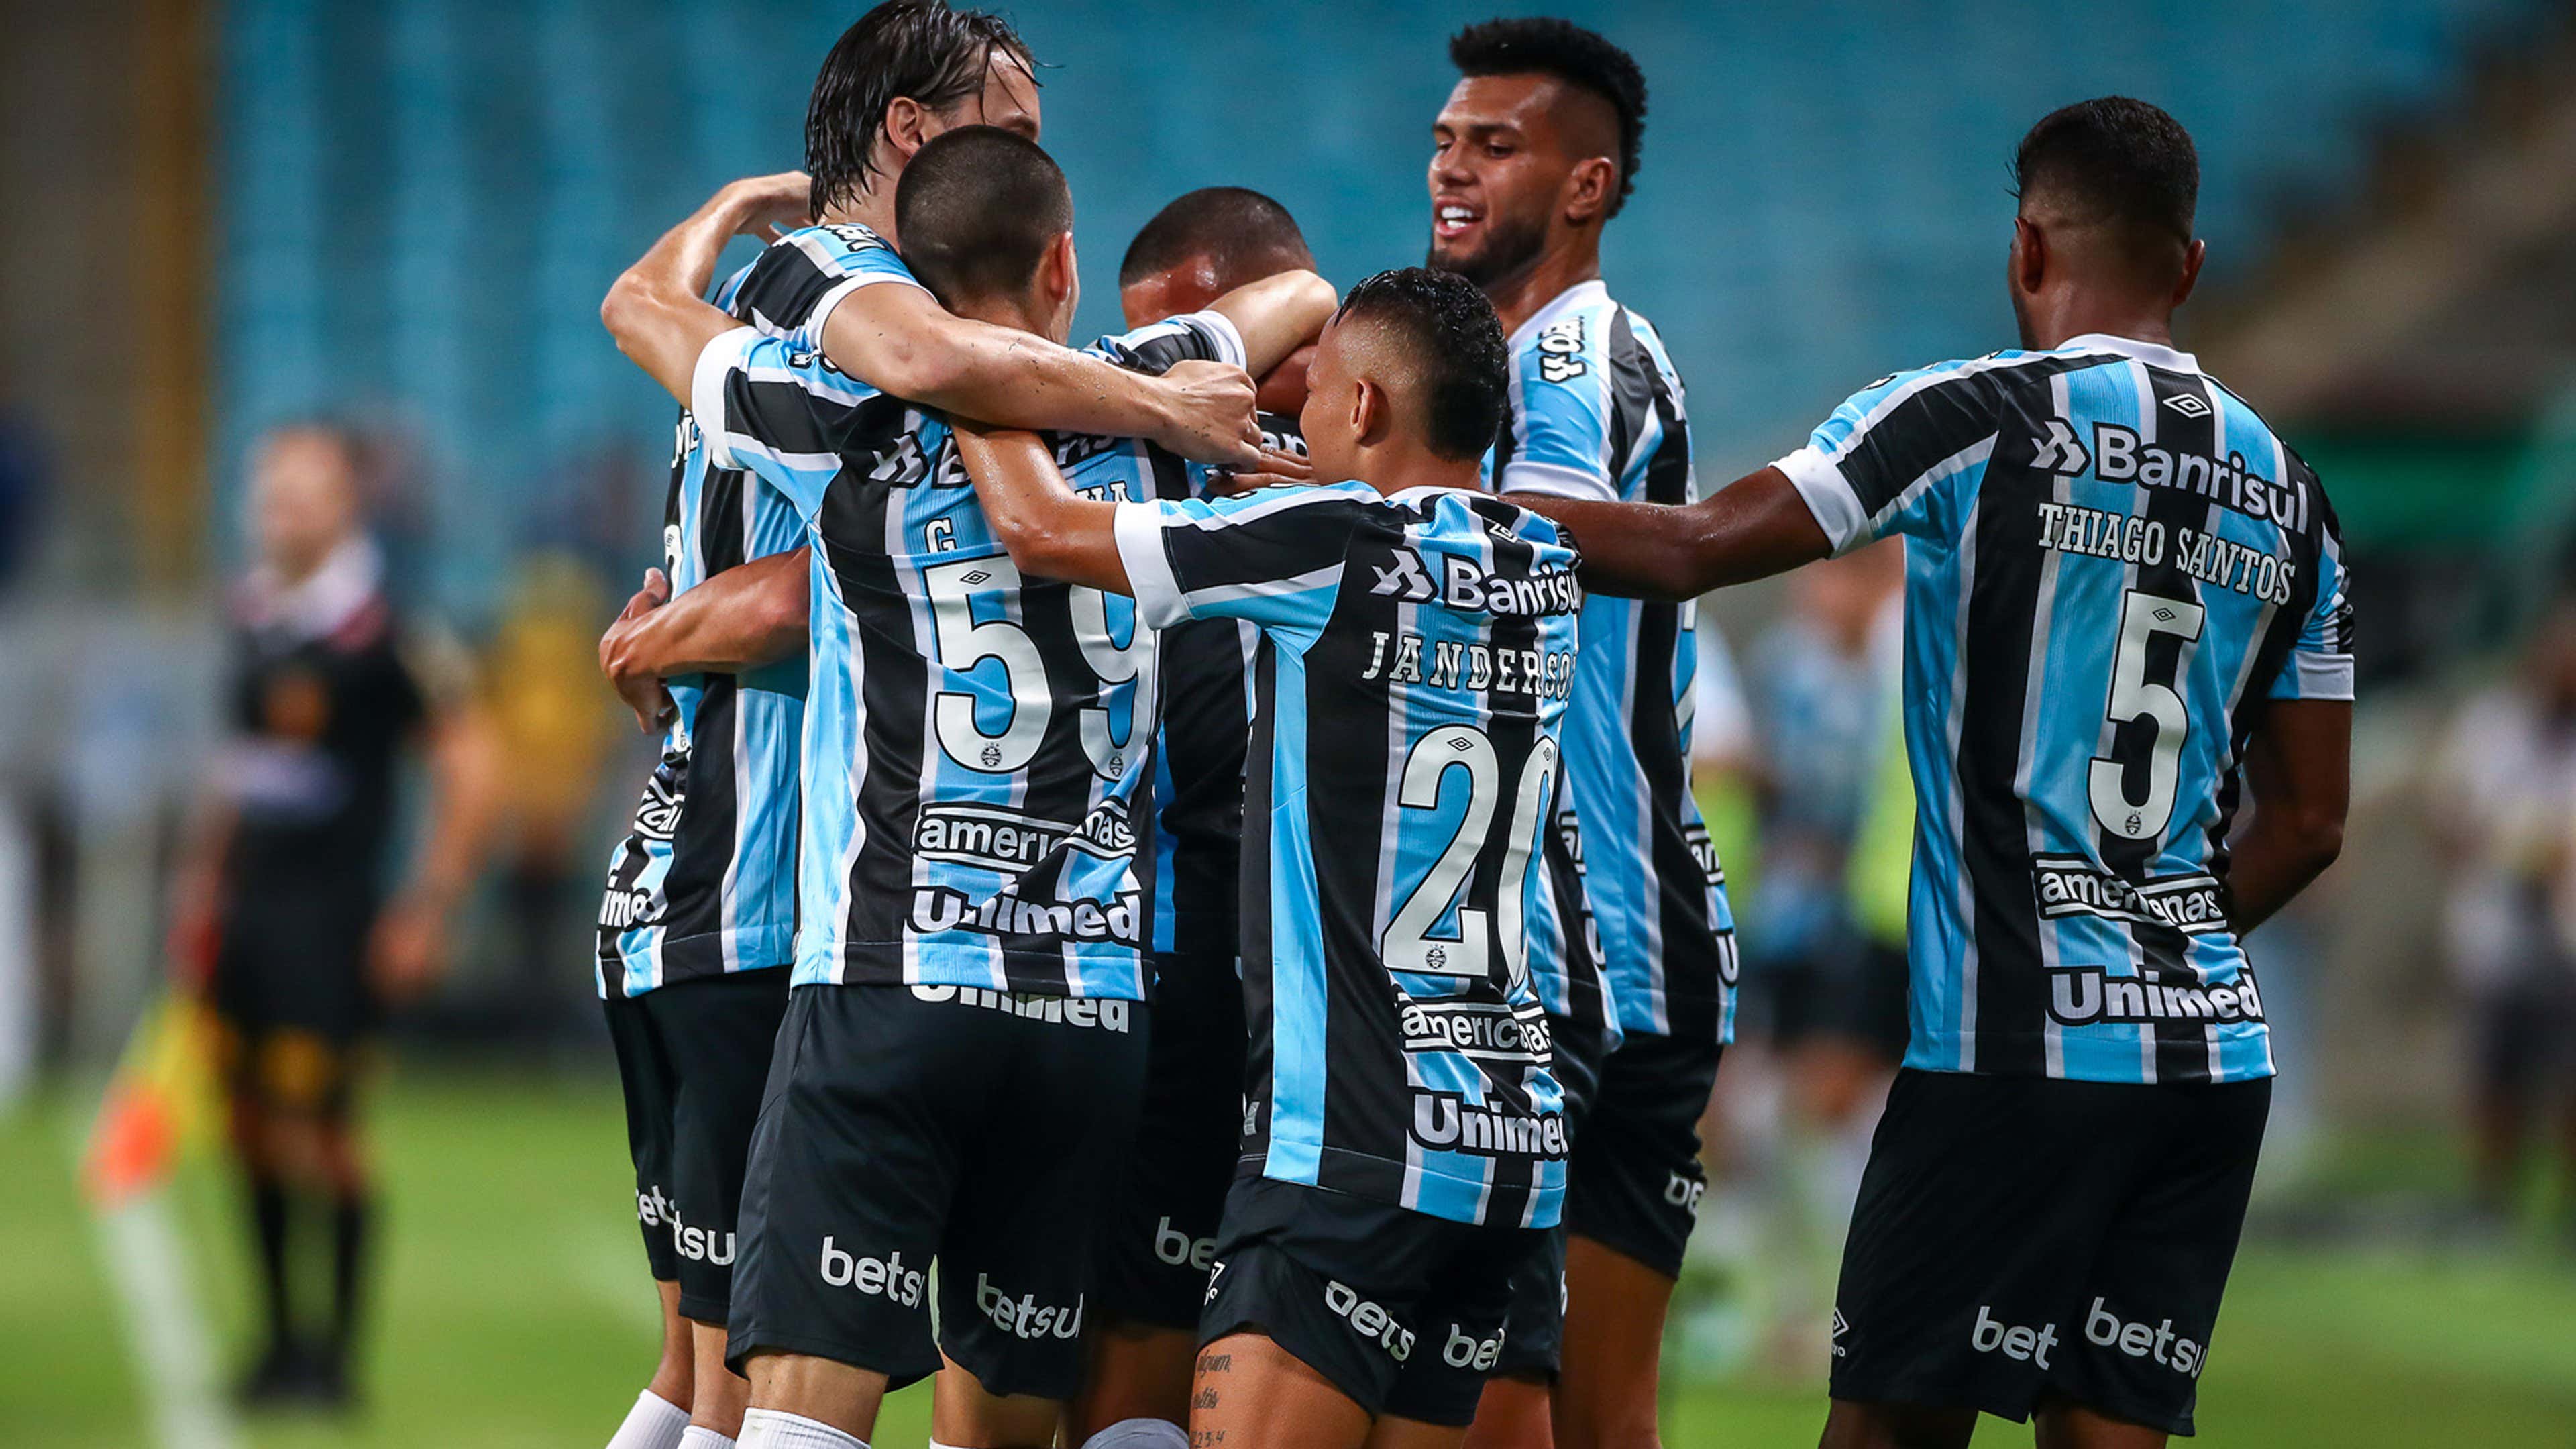 Notícias do Grêmio, resultados e próximos jogos